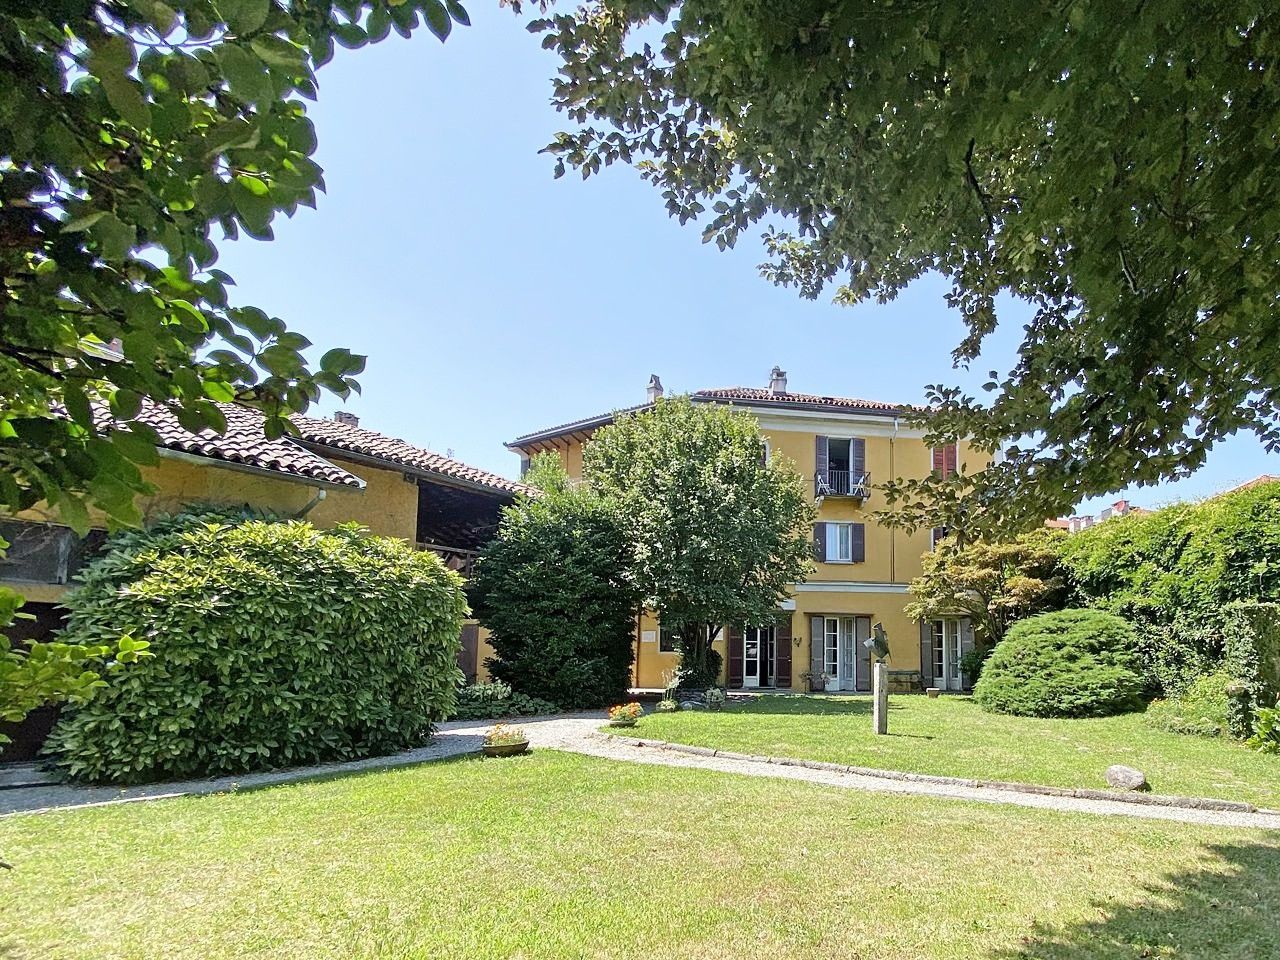 Fotos Villa en Verbania Intra - Propiedad privada cerrada con gran jardín